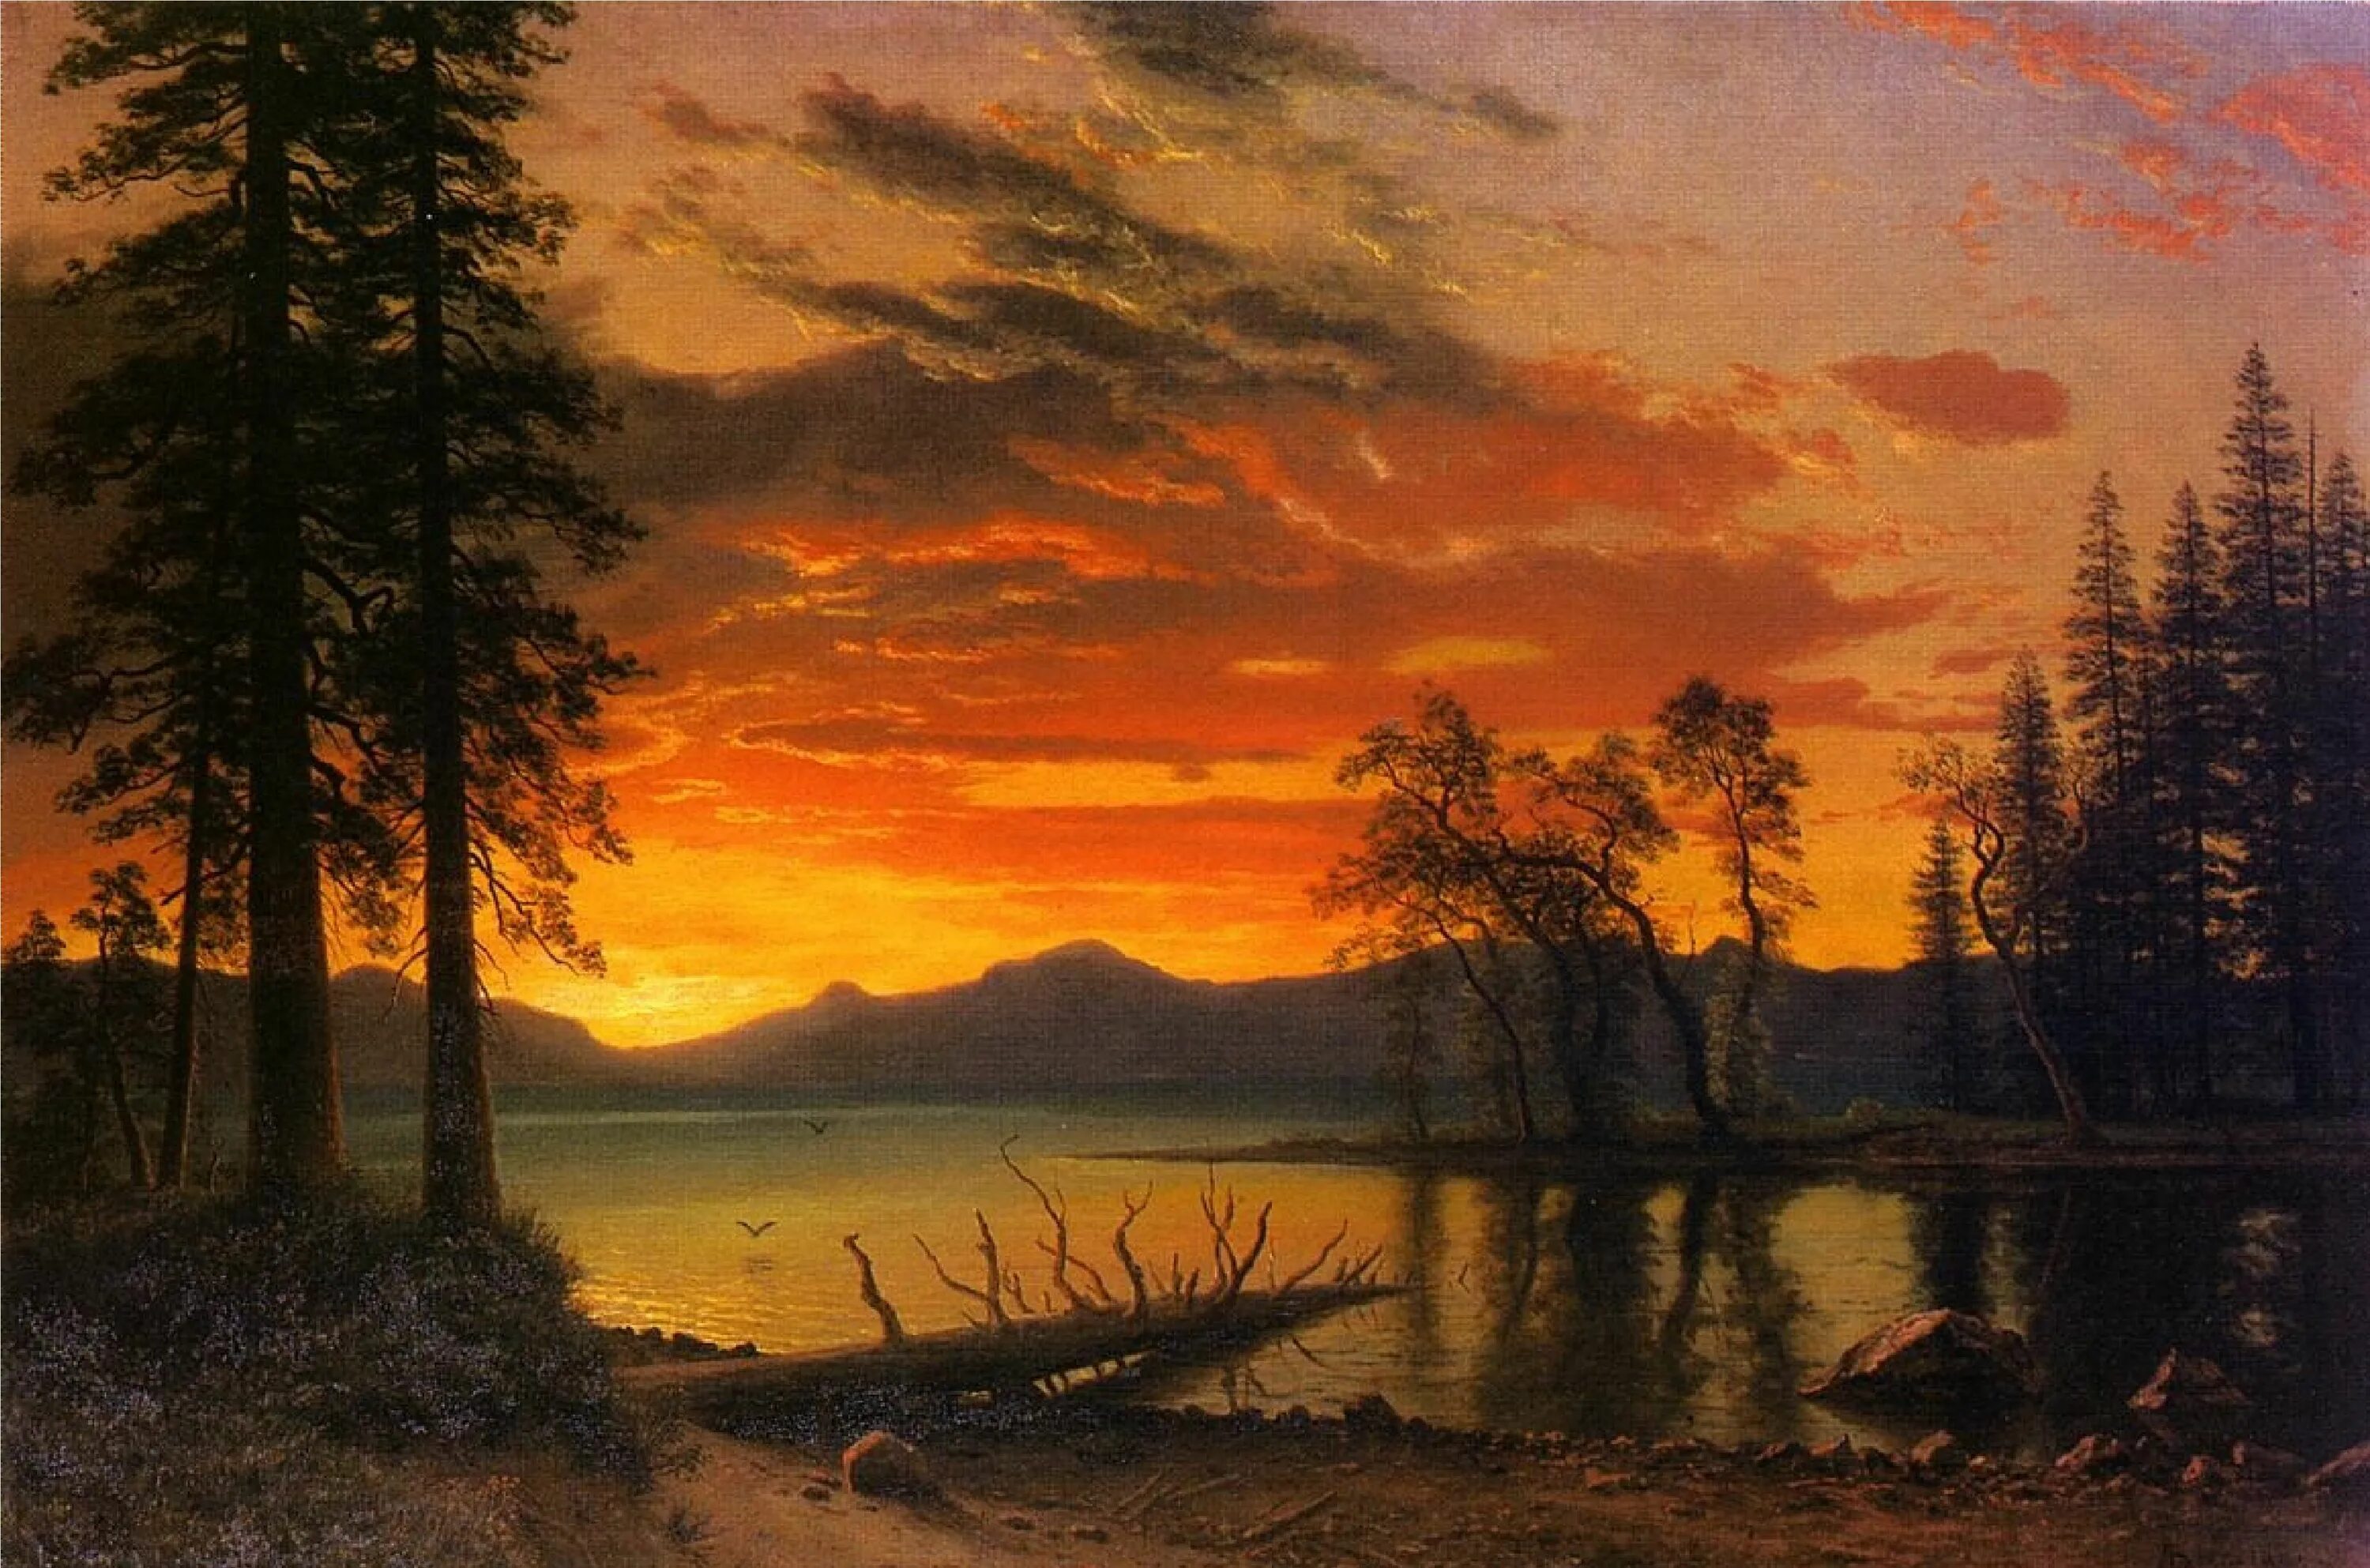 Пейзаж в художественном произведении. Albert Bierstadt художник.